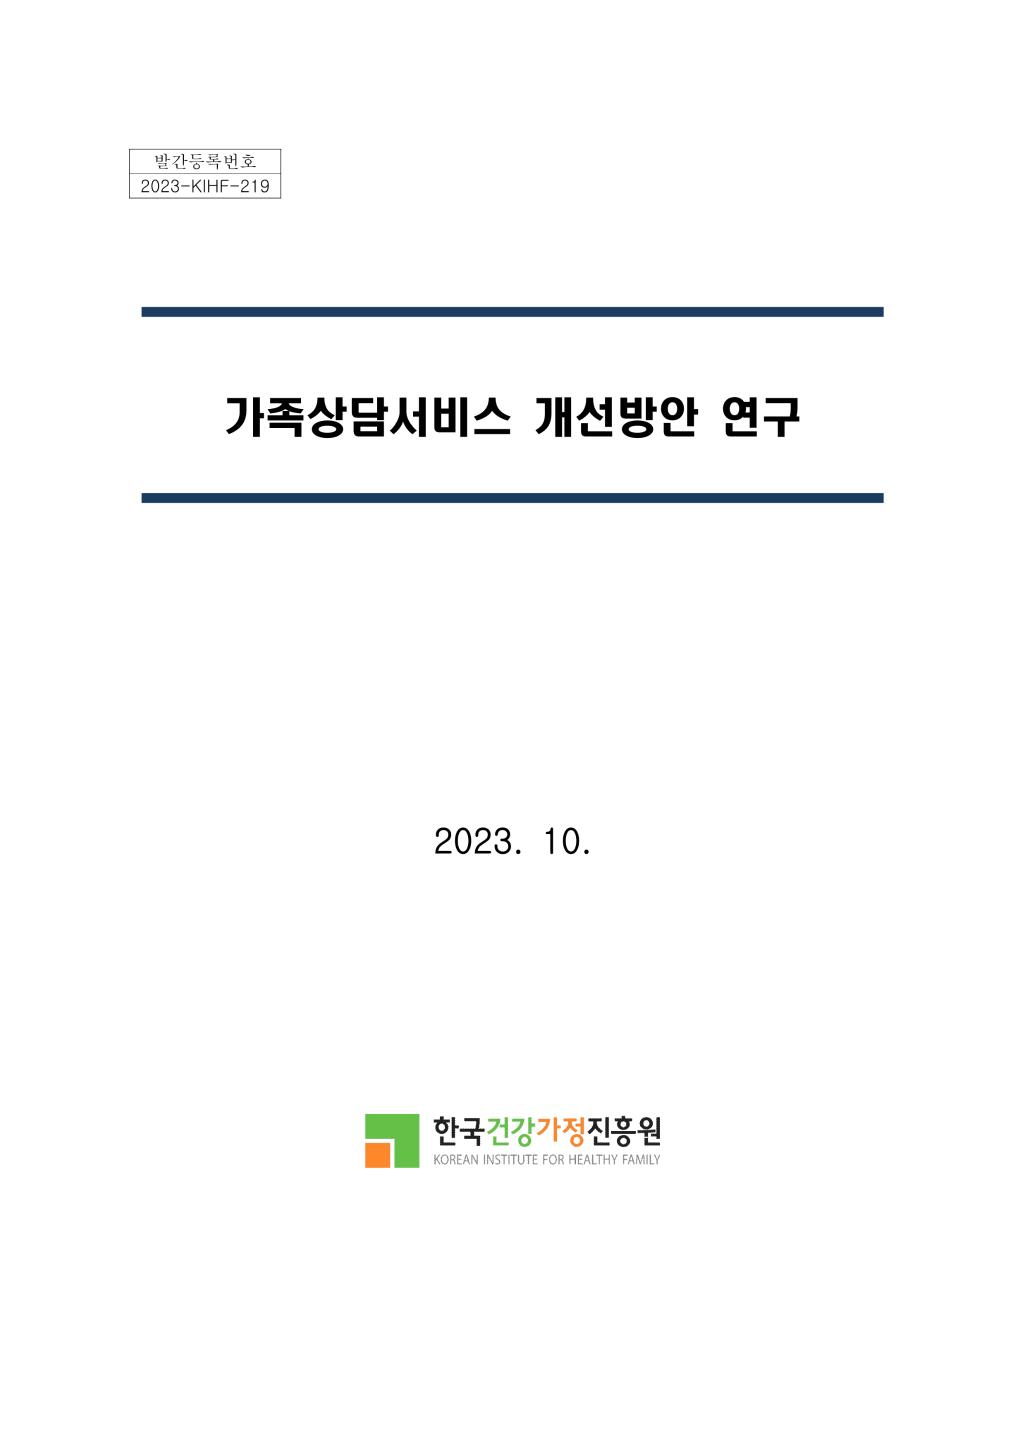 발간등록번호 2023-KIHF-219 가족상담서비스 개선방안 연구 2023. 10. 한국건강진흥원